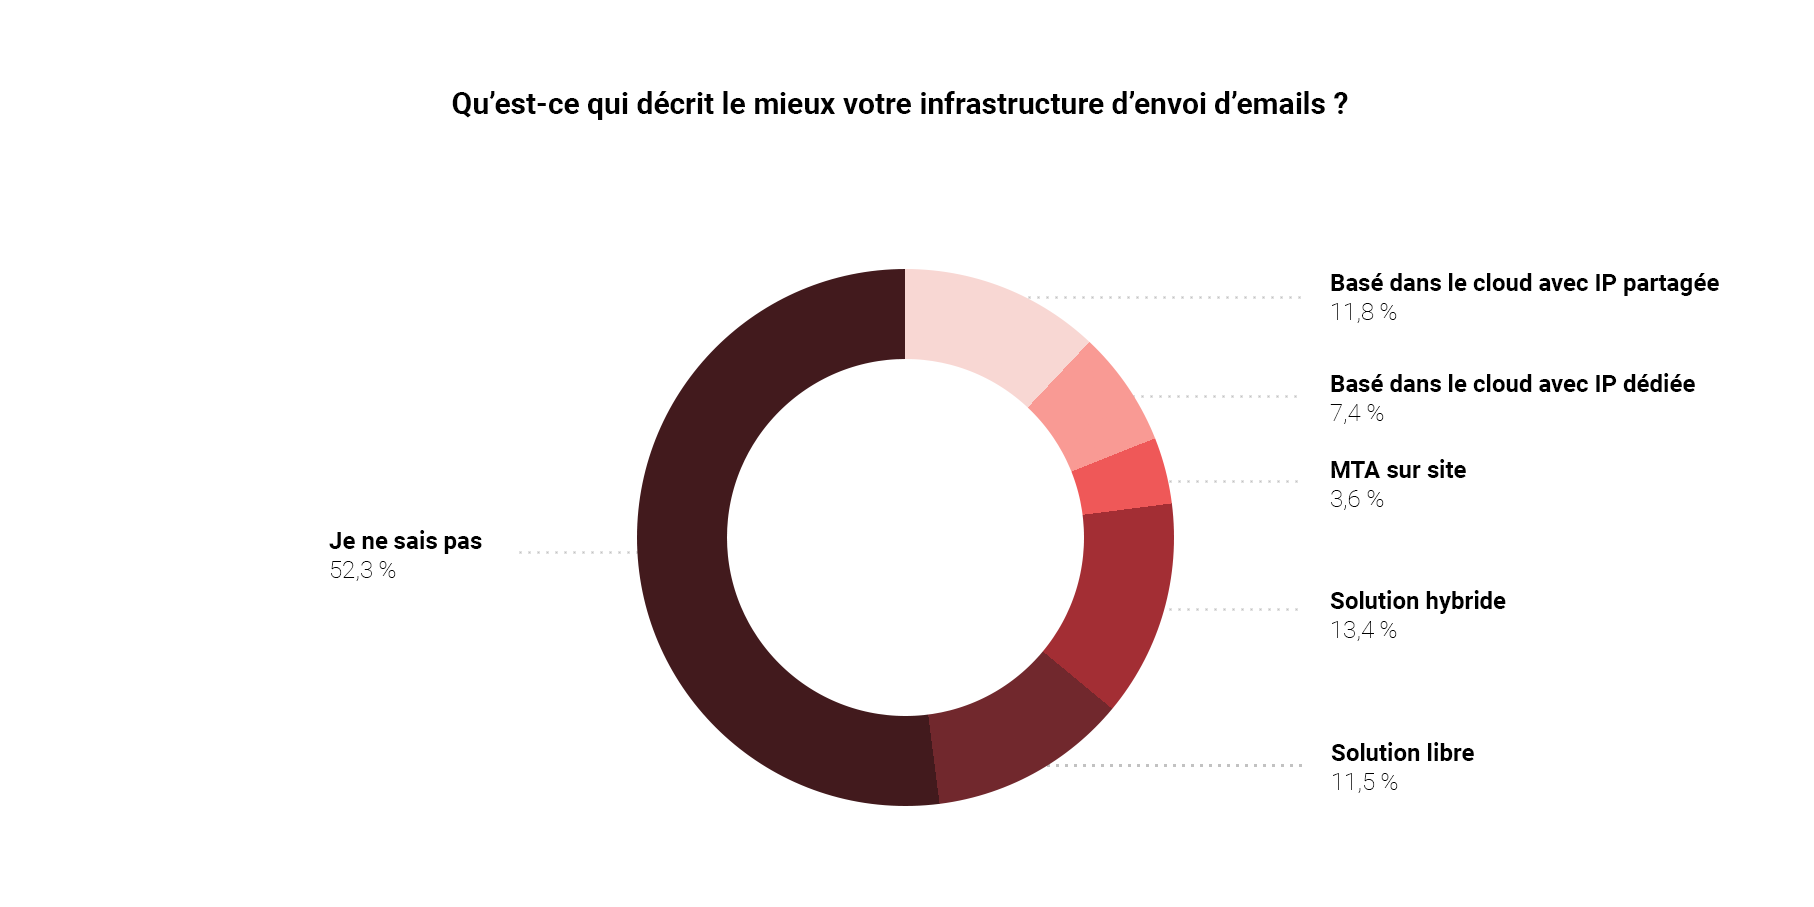 Graphique listant les différents types d’infrastructures d’envoi utilisées par les expéditeurs français